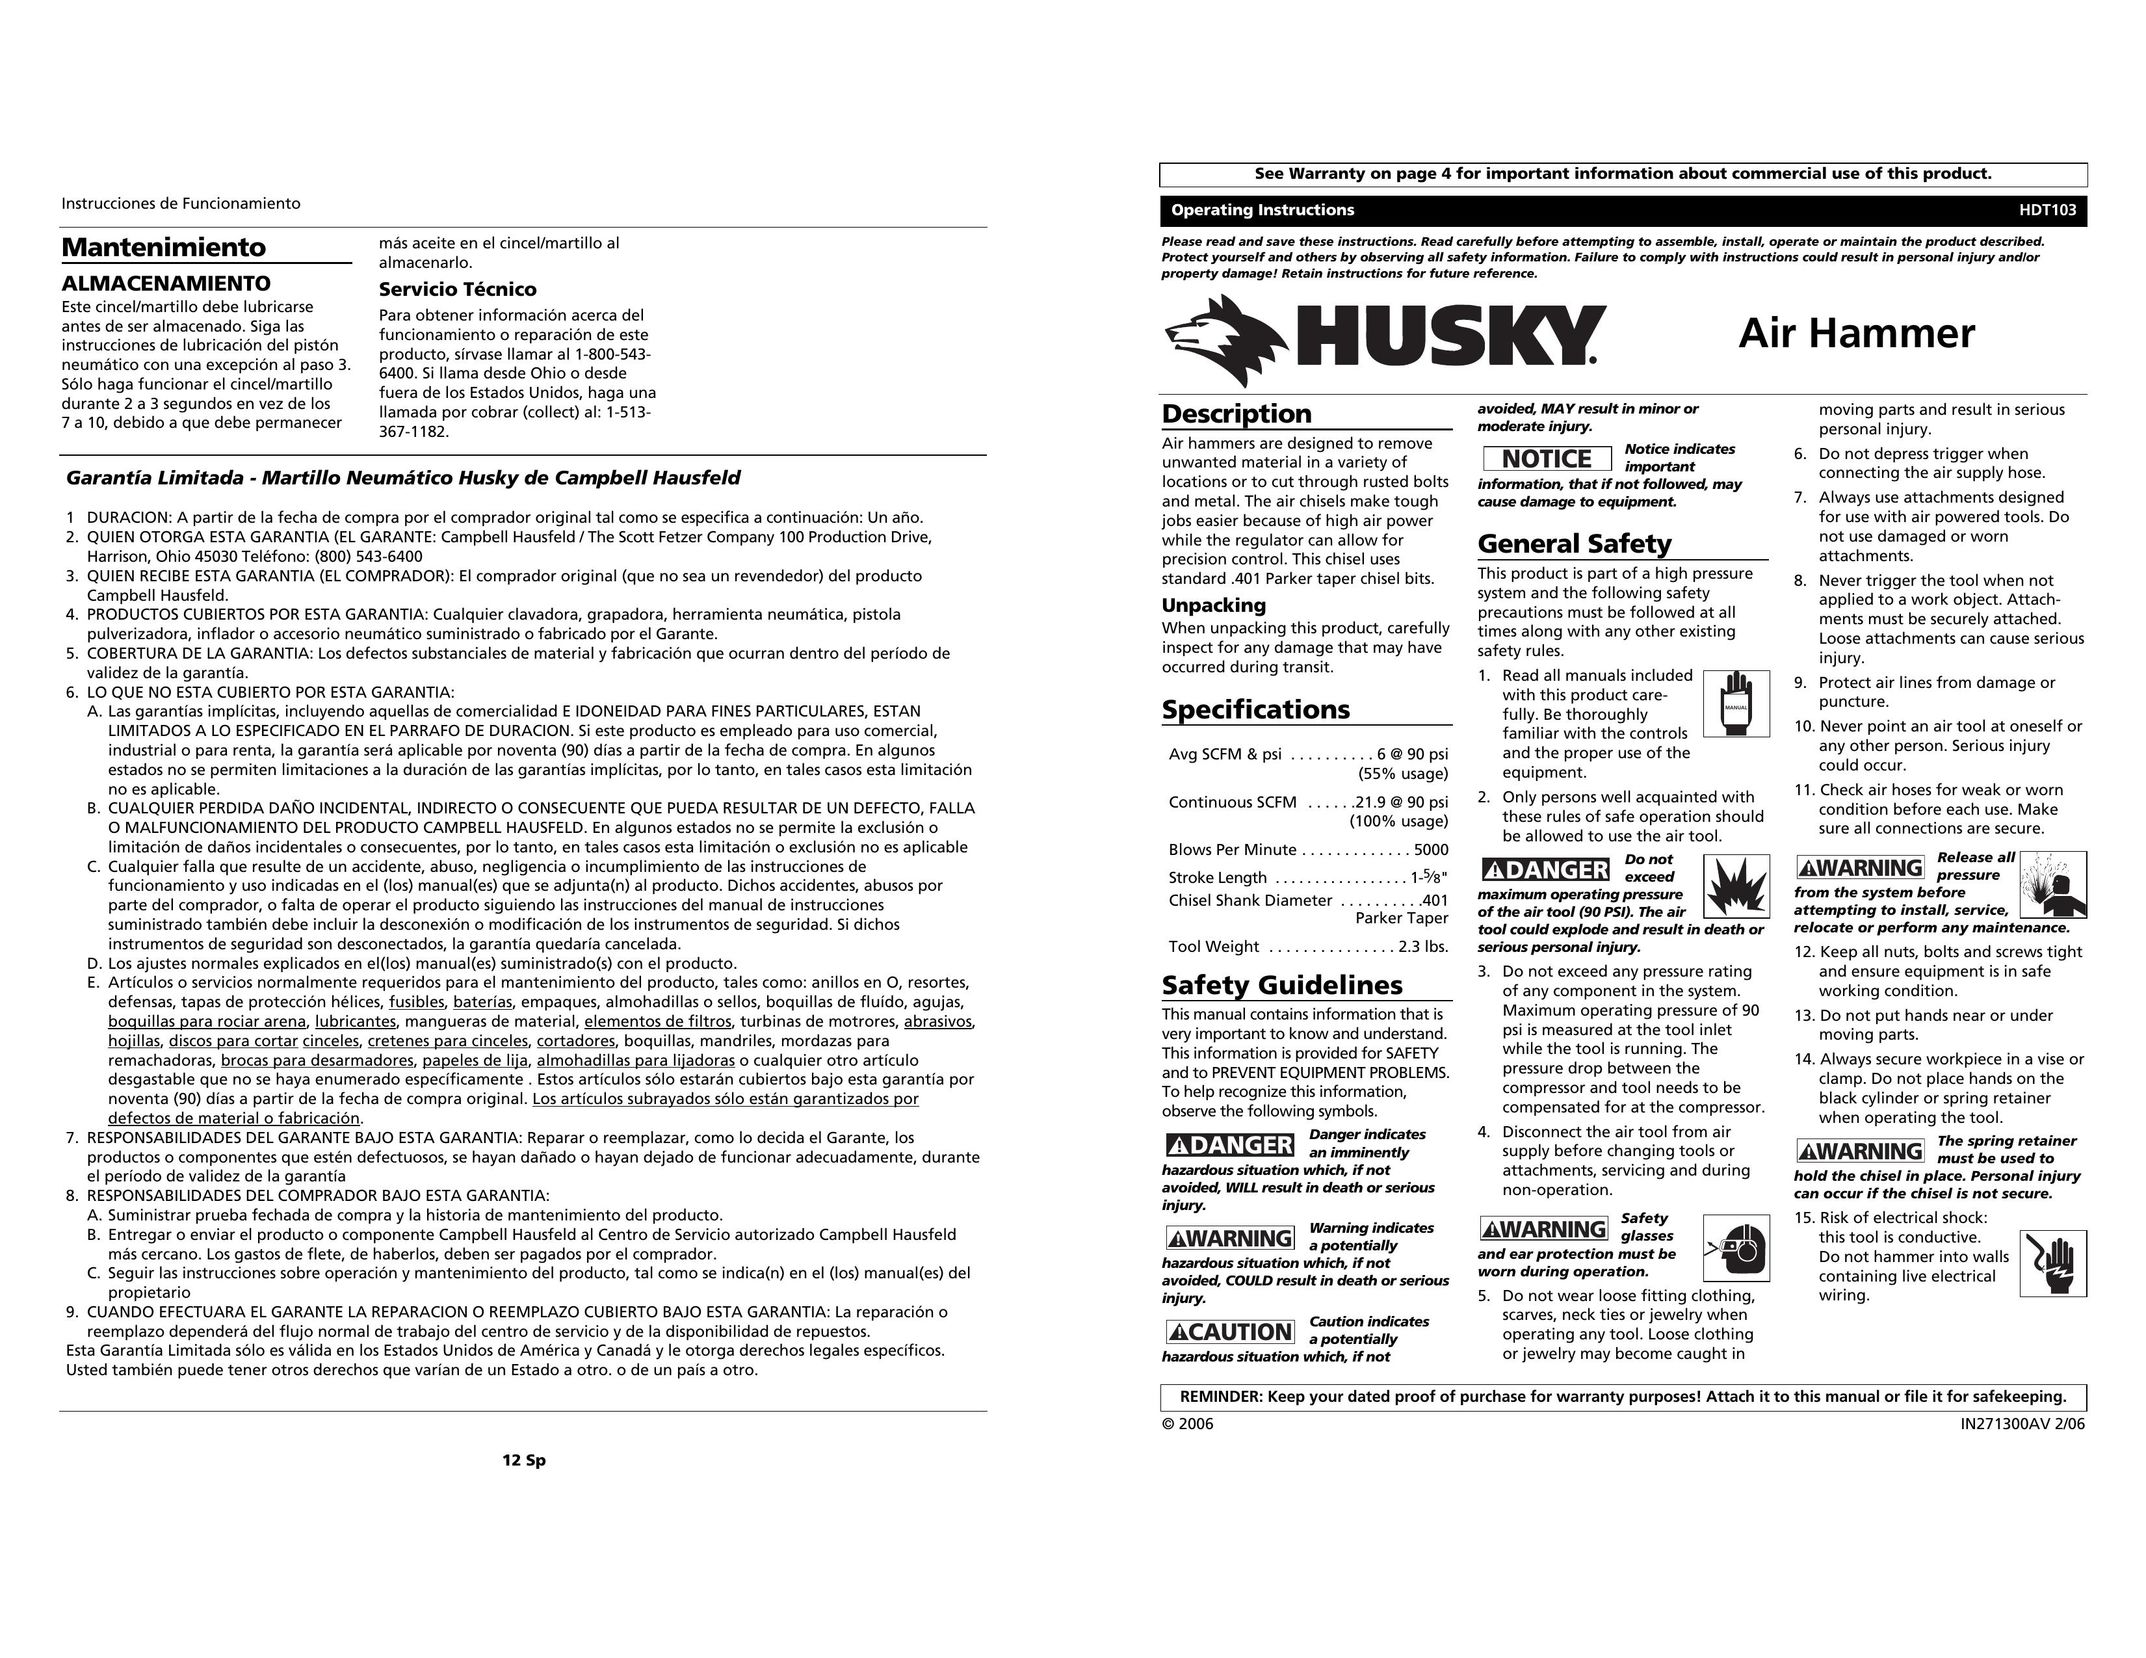 Husky HDT103 Network Card User Manual